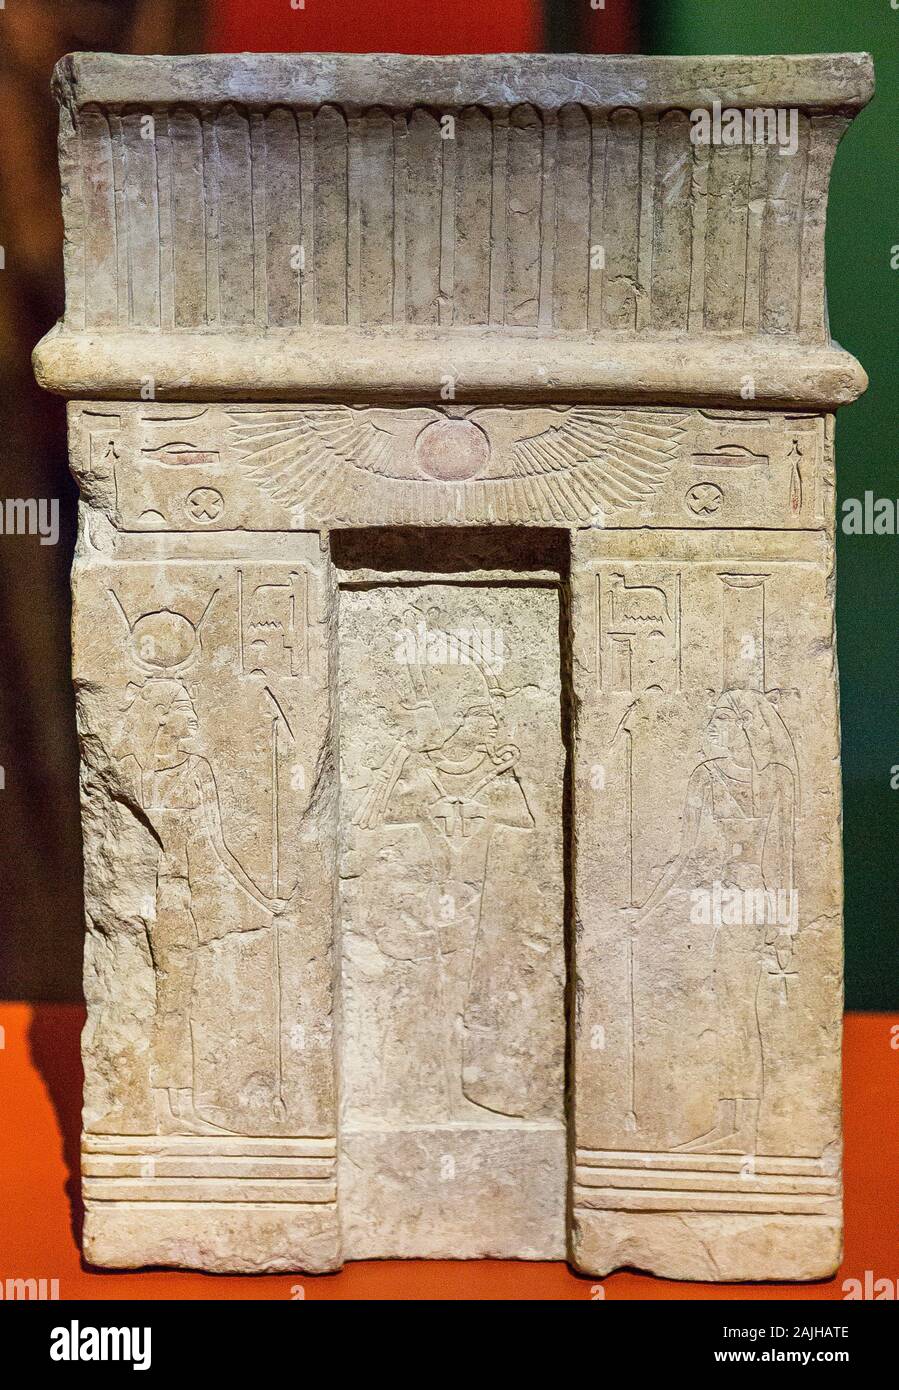 Foto tomada durante la visita de apertura de la exposición “Osiris, los misterios borrachos de Egipto”. Estela en forma de fachada del templo. Foto de stock